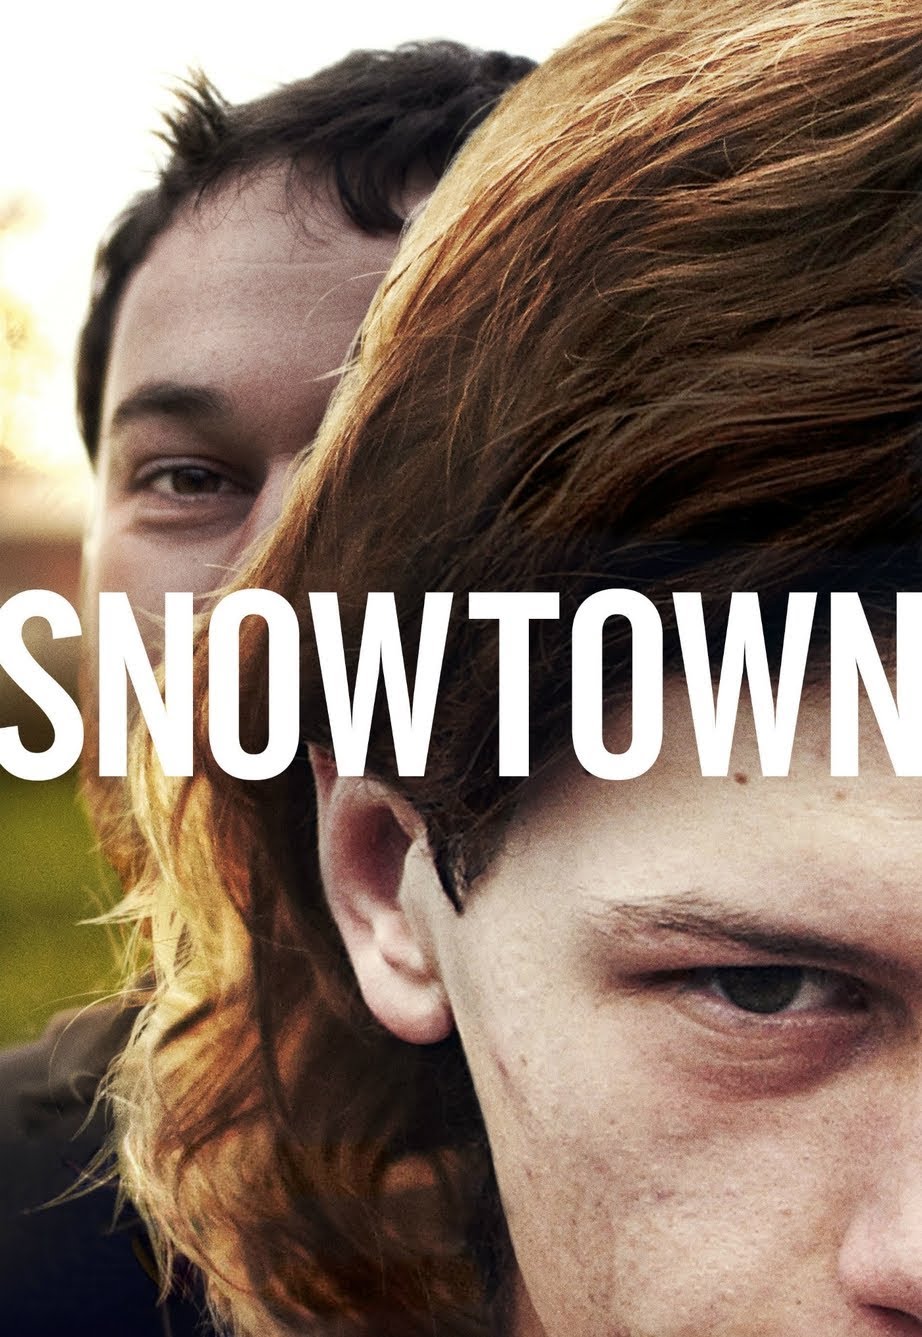 Snowtown [HD] (2011)